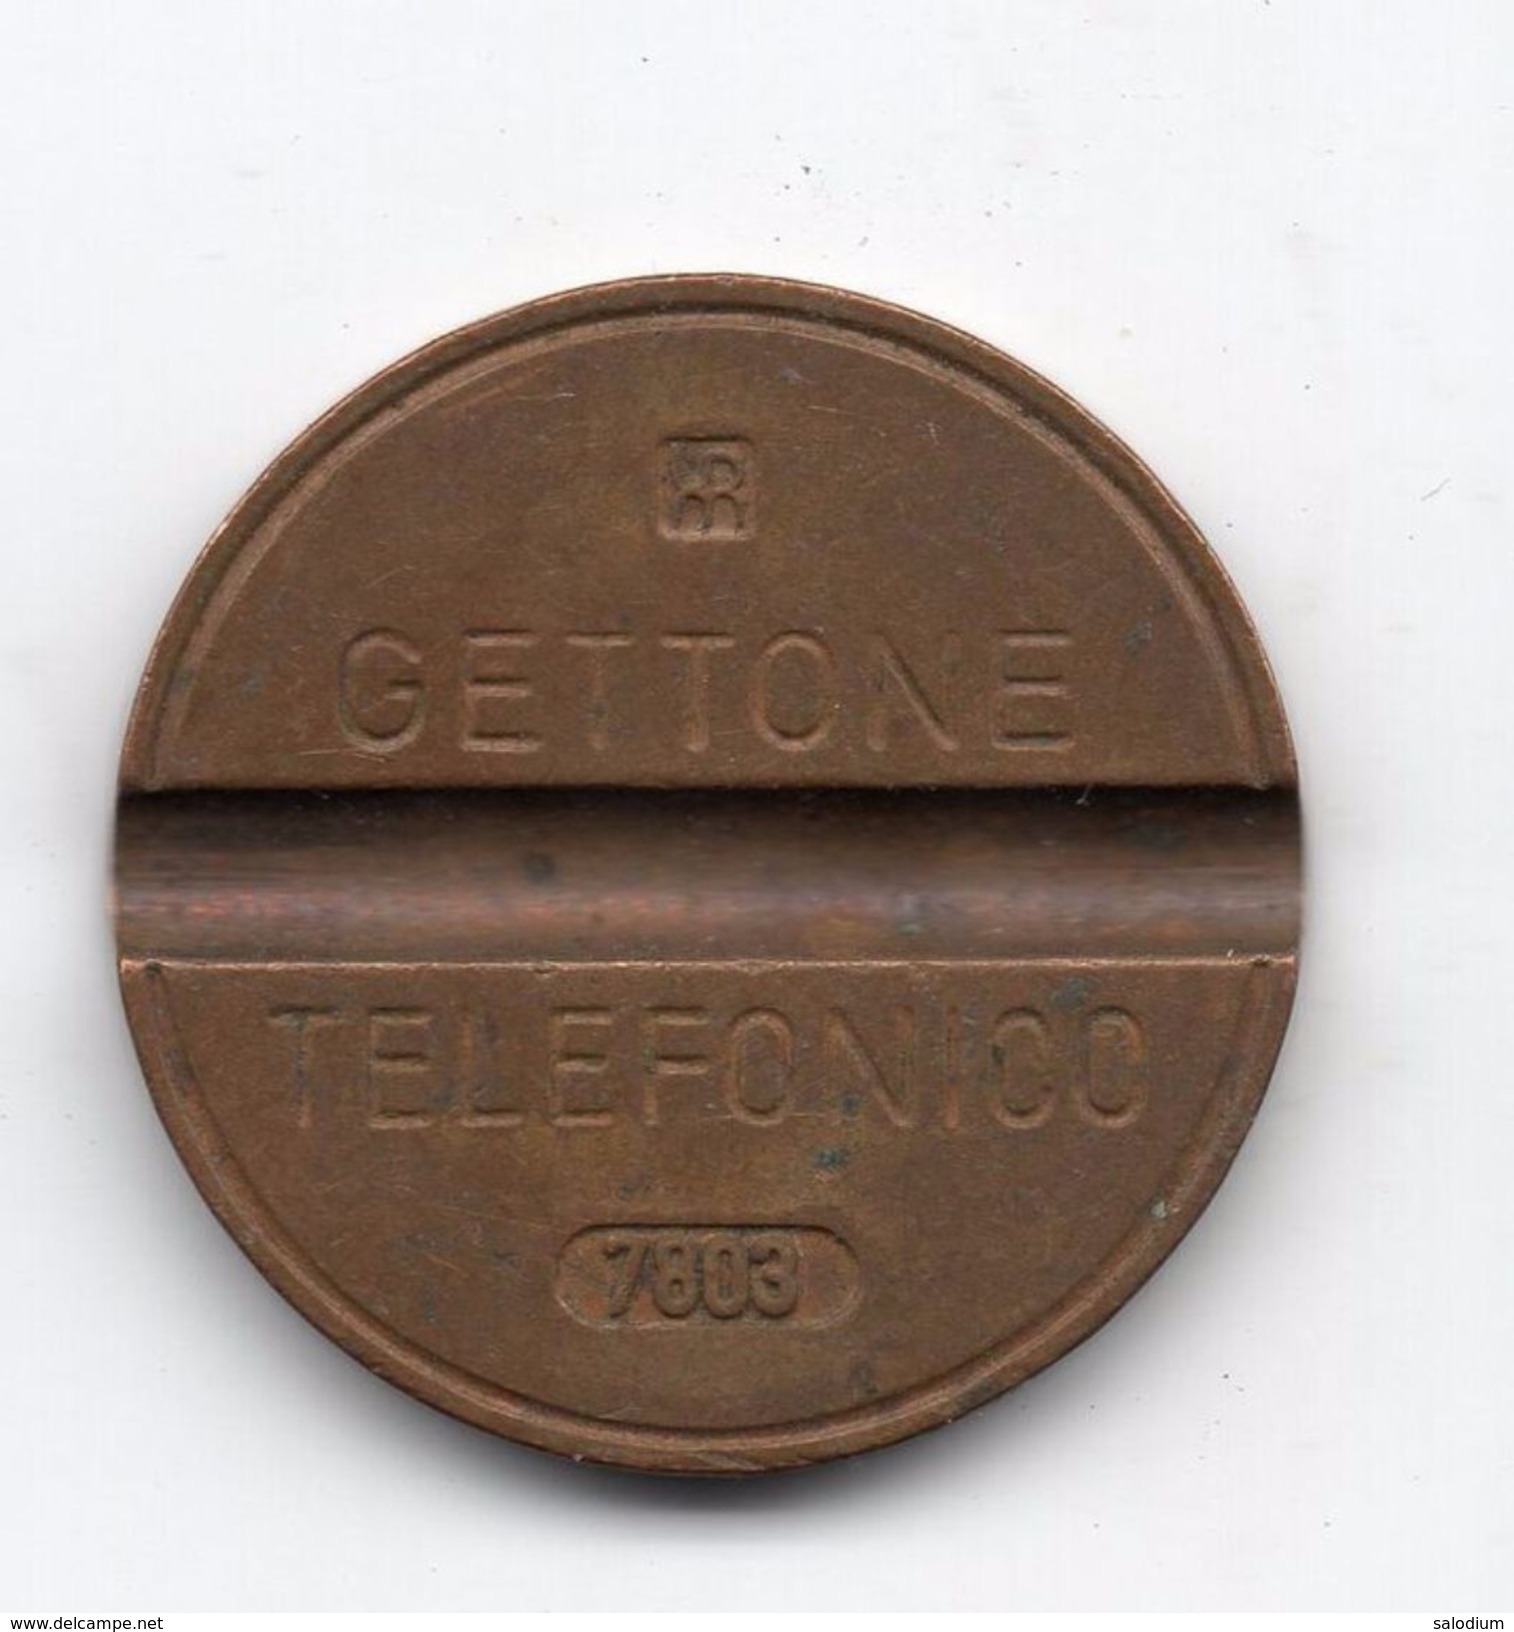 Gettone Telefonico 7803 Token Telephone - (Id-750) - Professionnels/De Société